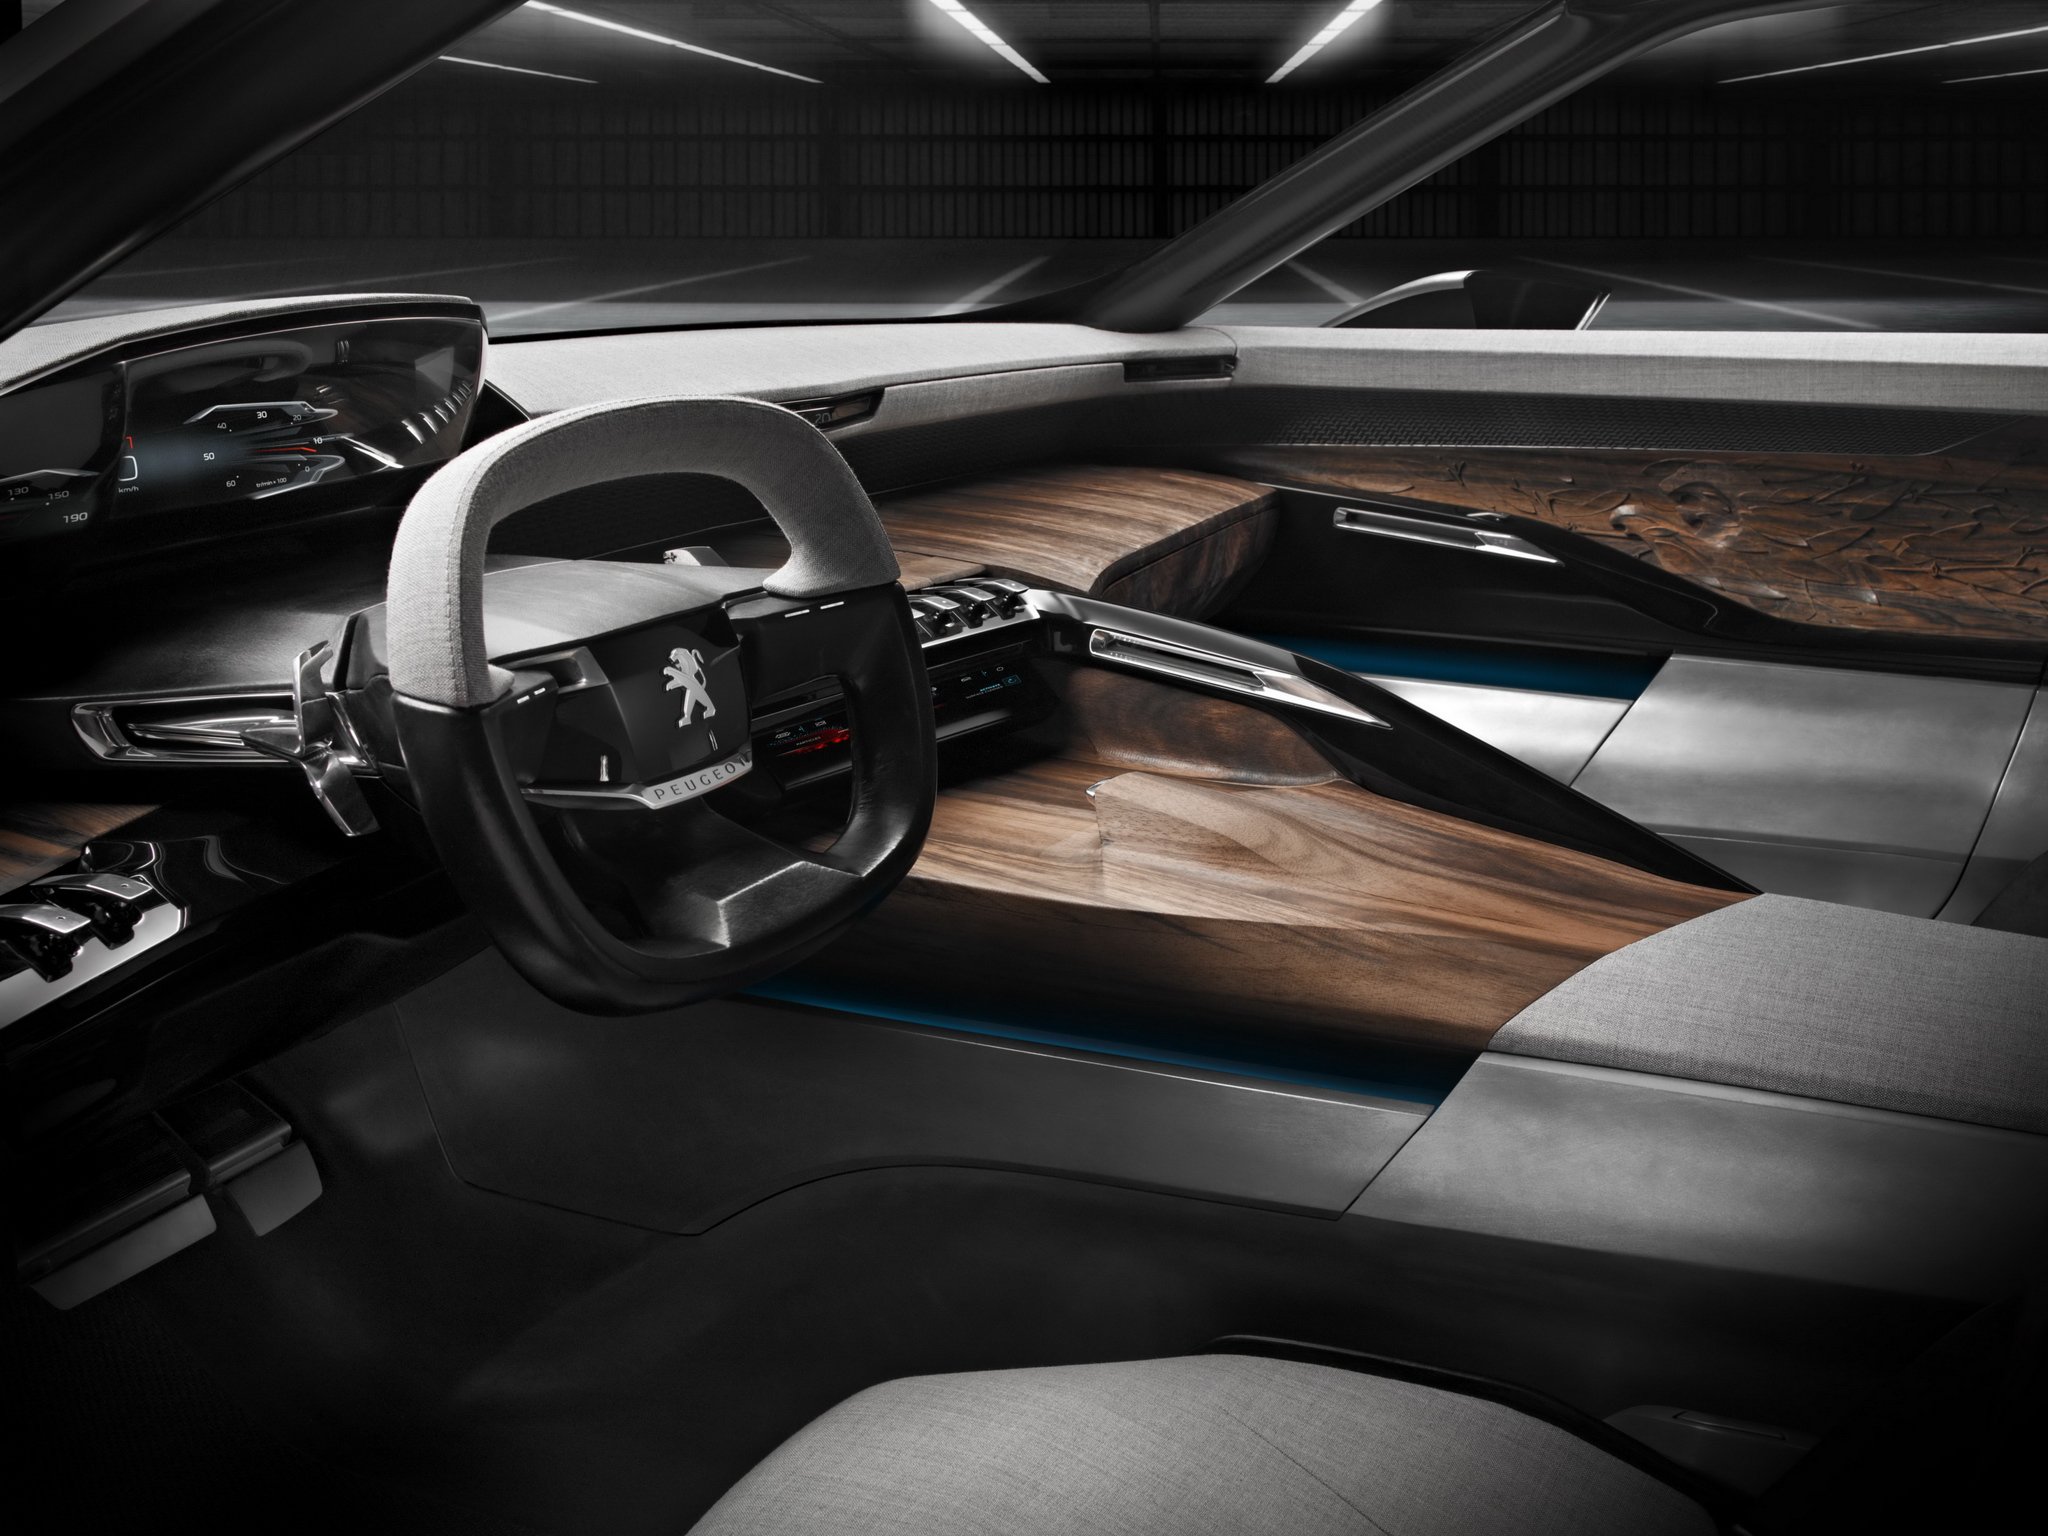 2014, Peugeot, Exalt, Concept, Interior Wallpaper